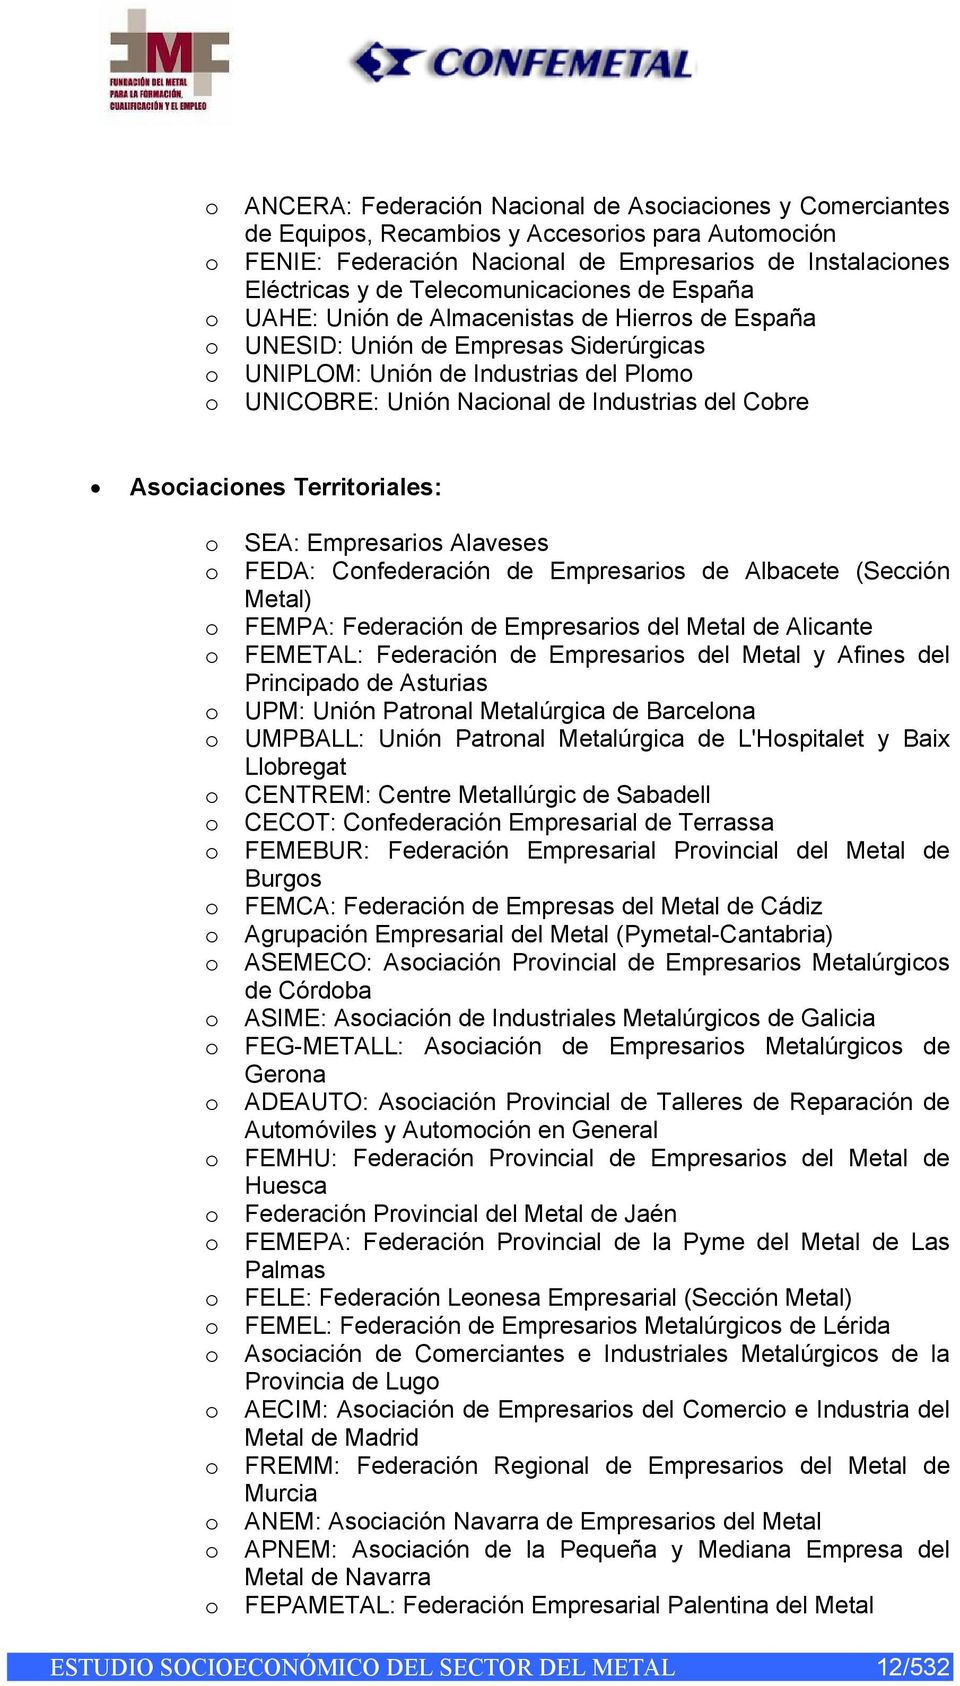 Industrias del Cobre Asociaciones Territoriales: o SEA: Empresarios Alaveses o FEDA: Confederación de Empresarios de Albacete (Sección Metal) o FEMPA: Federación de Empresarios del Metal de Alicante